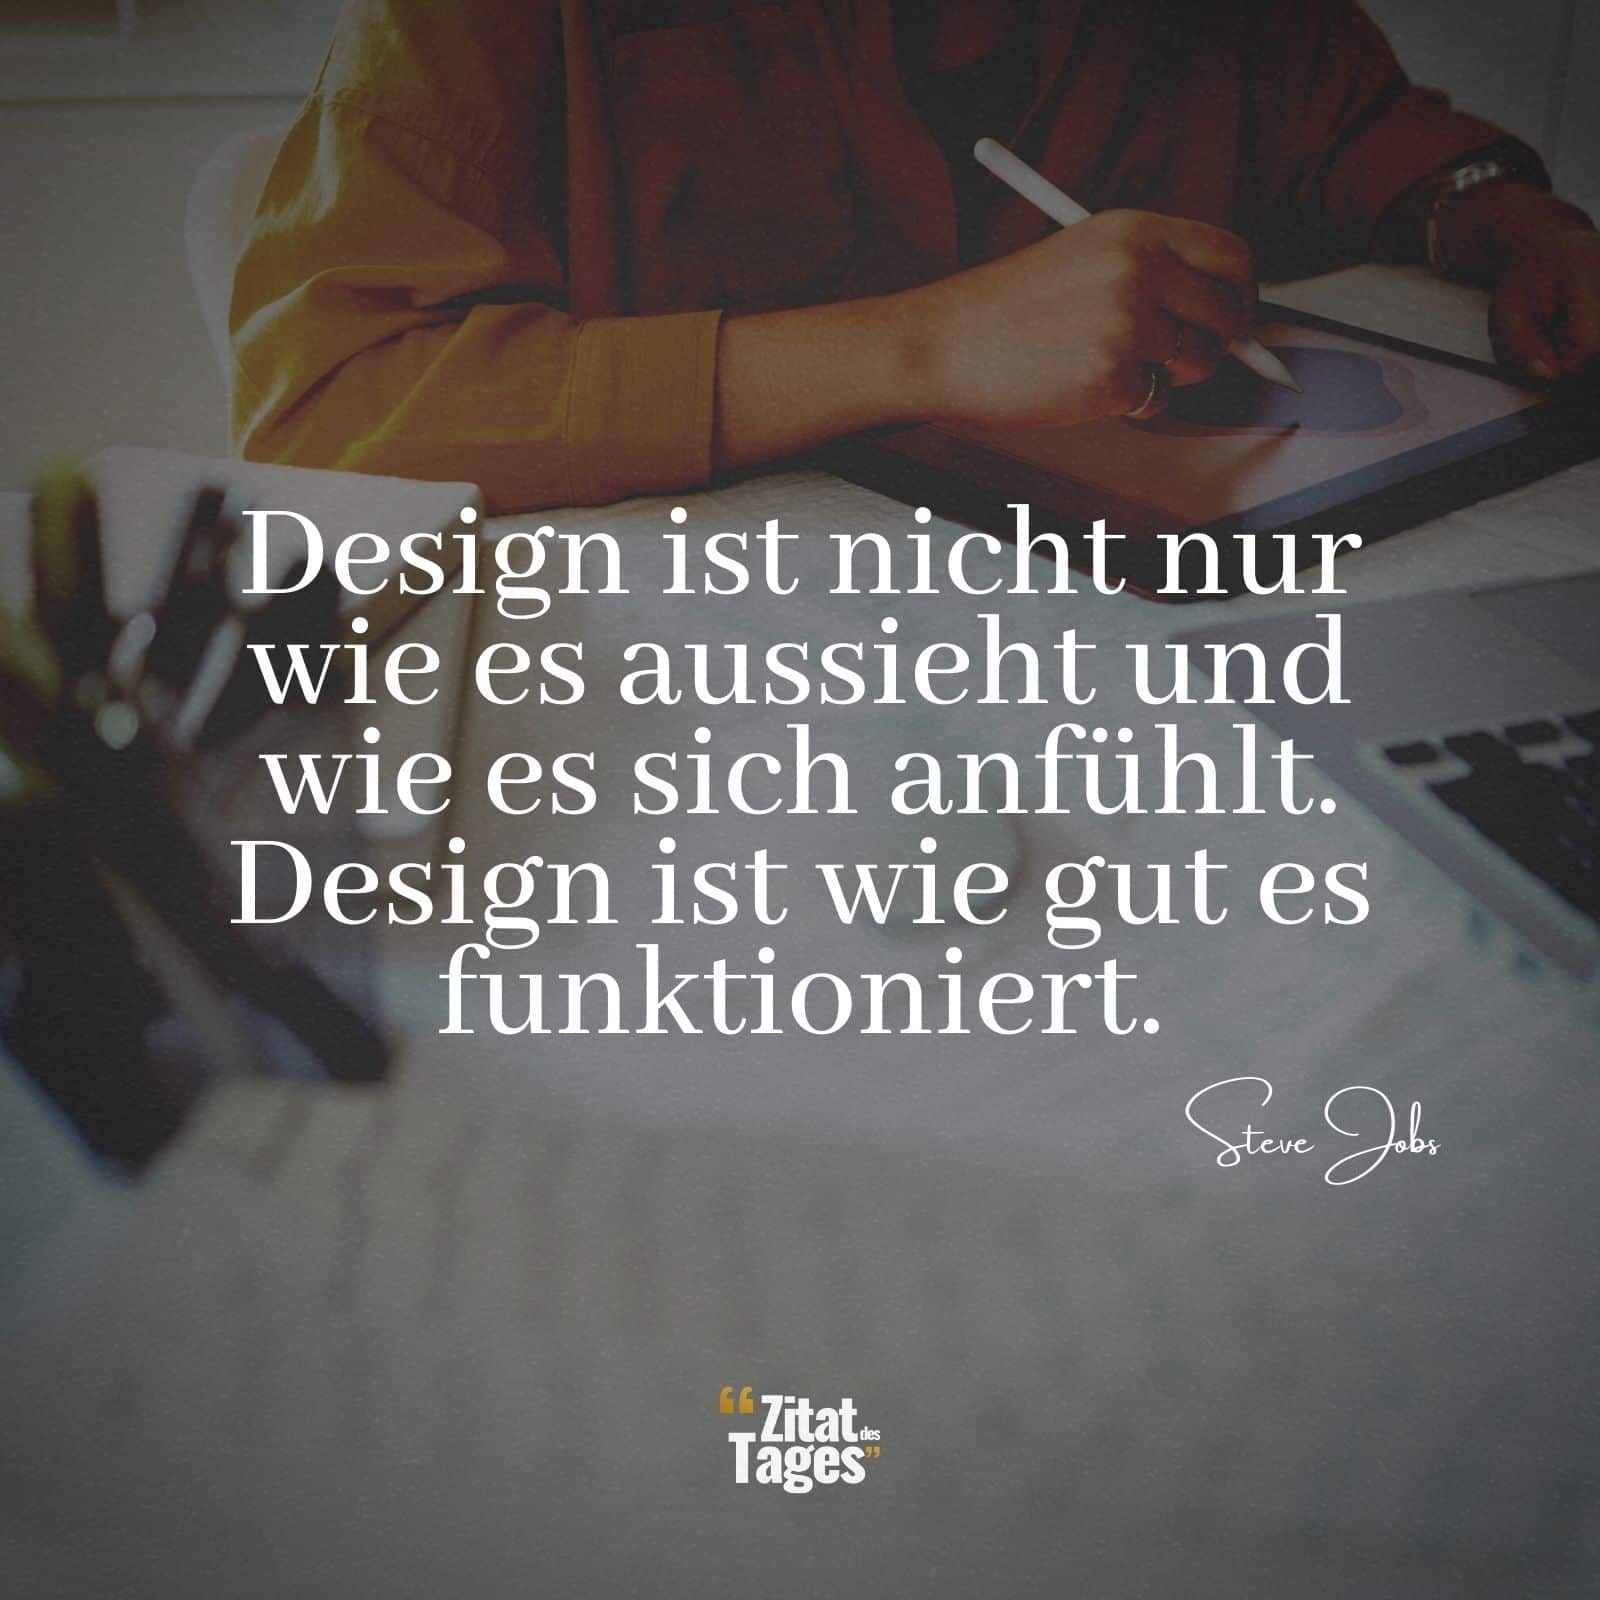 Design ist nicht nur wie es aussieht und wie es sich anfühlt. Design ist wie gut es funktioniert. - Steve Jobs